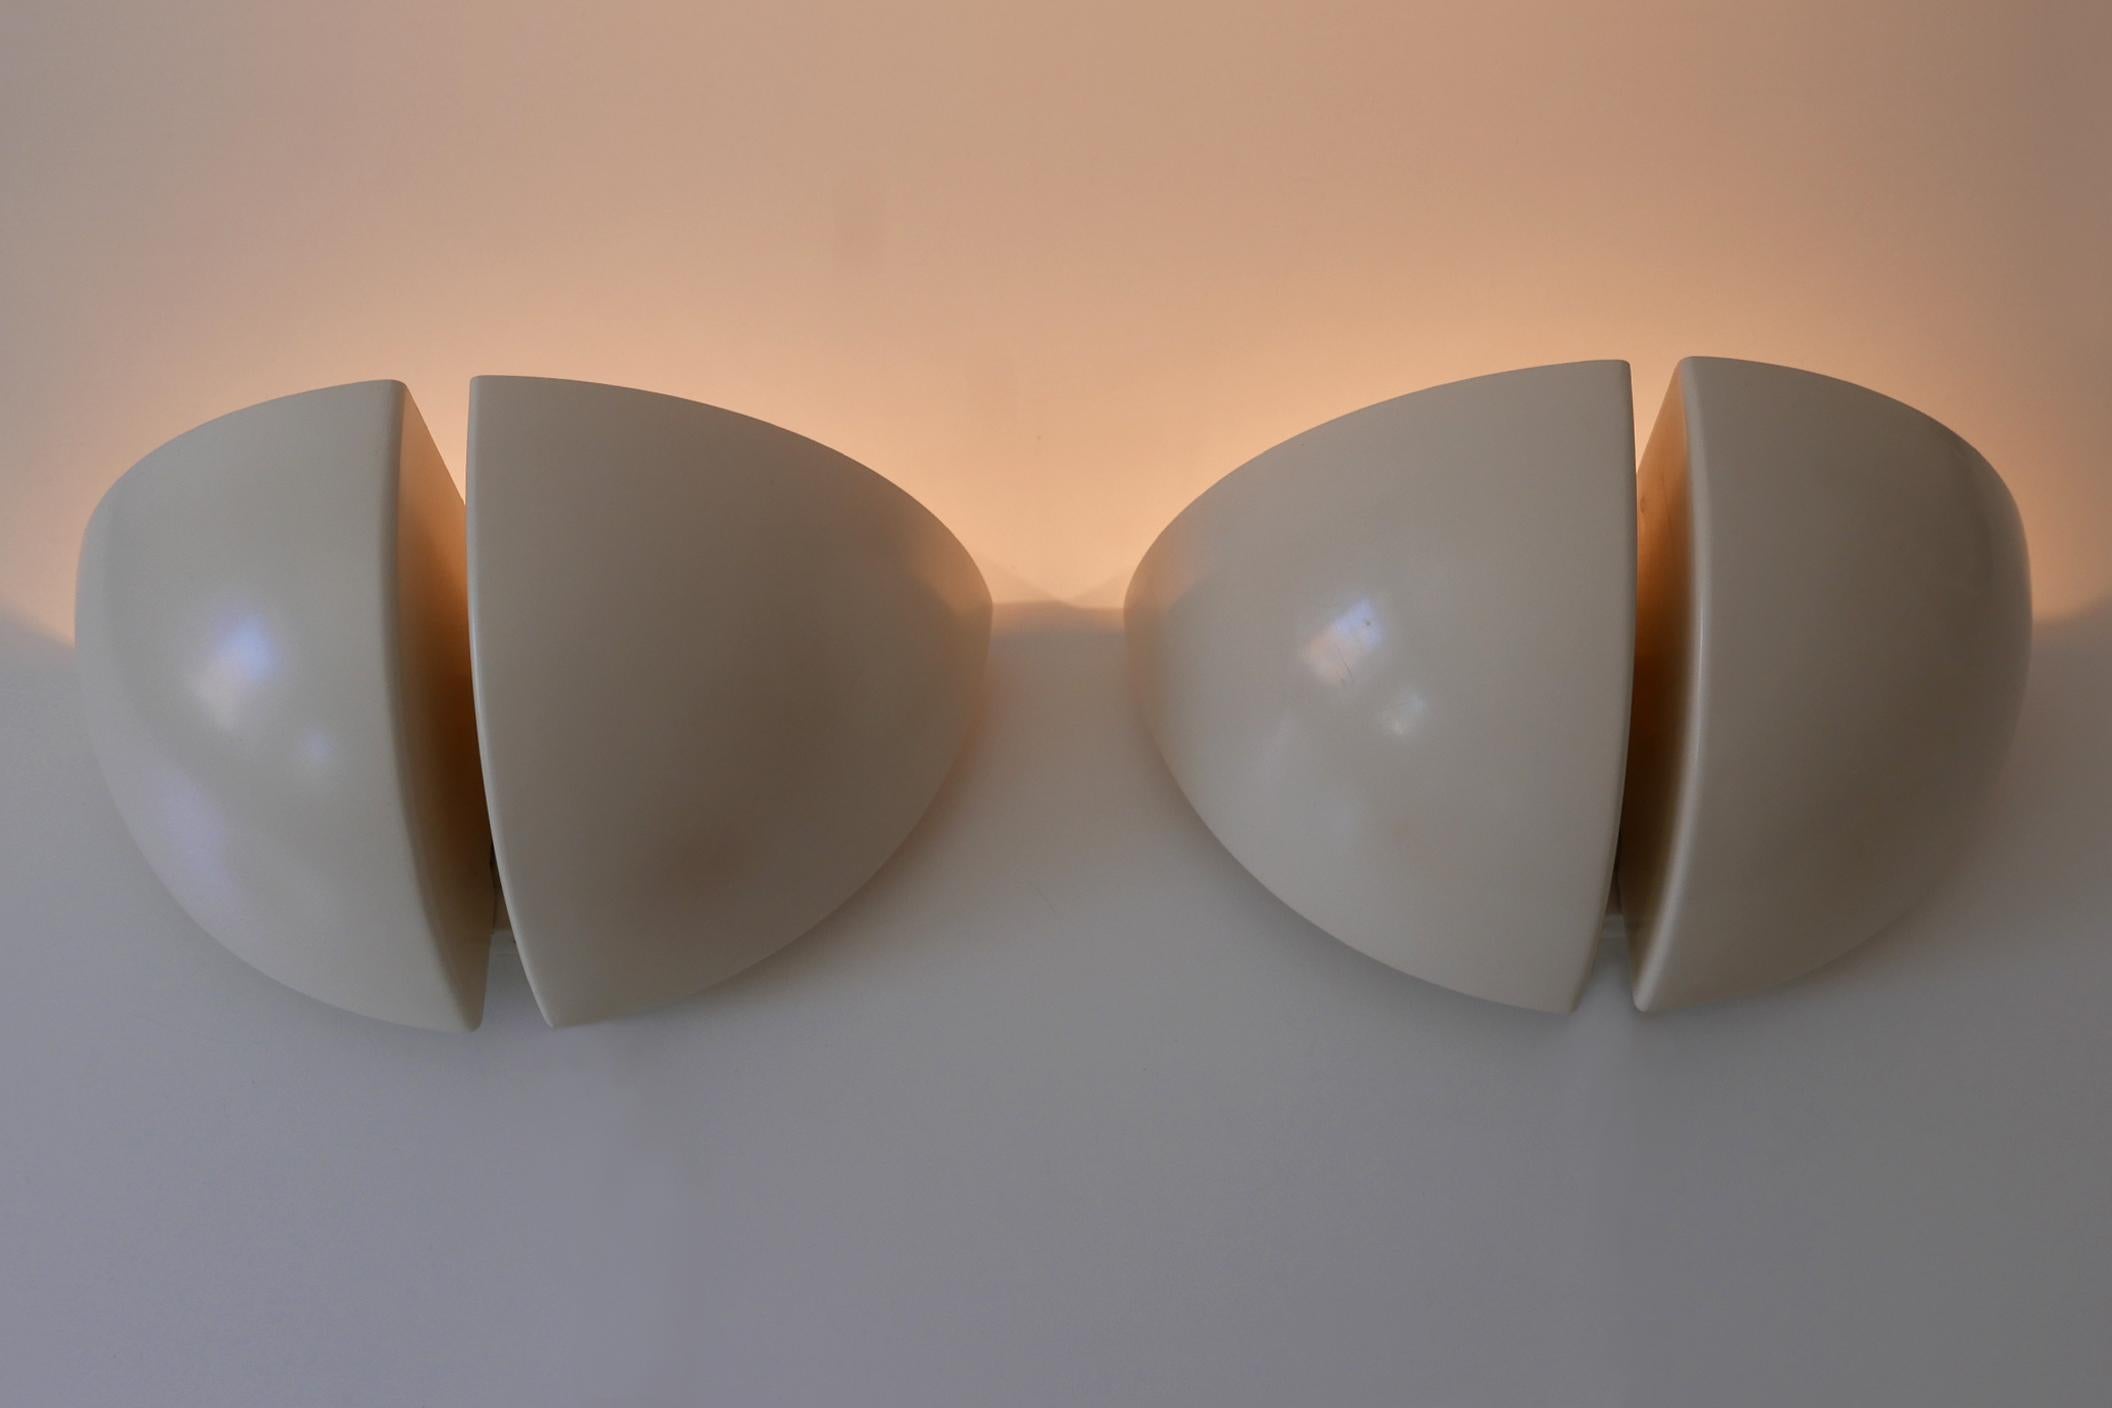 Set aus zwei preisgekrönten minimalistischen und eleganten Mid-Century Modern Oktavo zweiflammigen Wandlampen oder Wandleuchtern. Modell C-1542. Entworfen und hergestellt von RAAK, Niederlande, 1970er Jahre.

Die Oktavo Wandleuchte, die sowohl